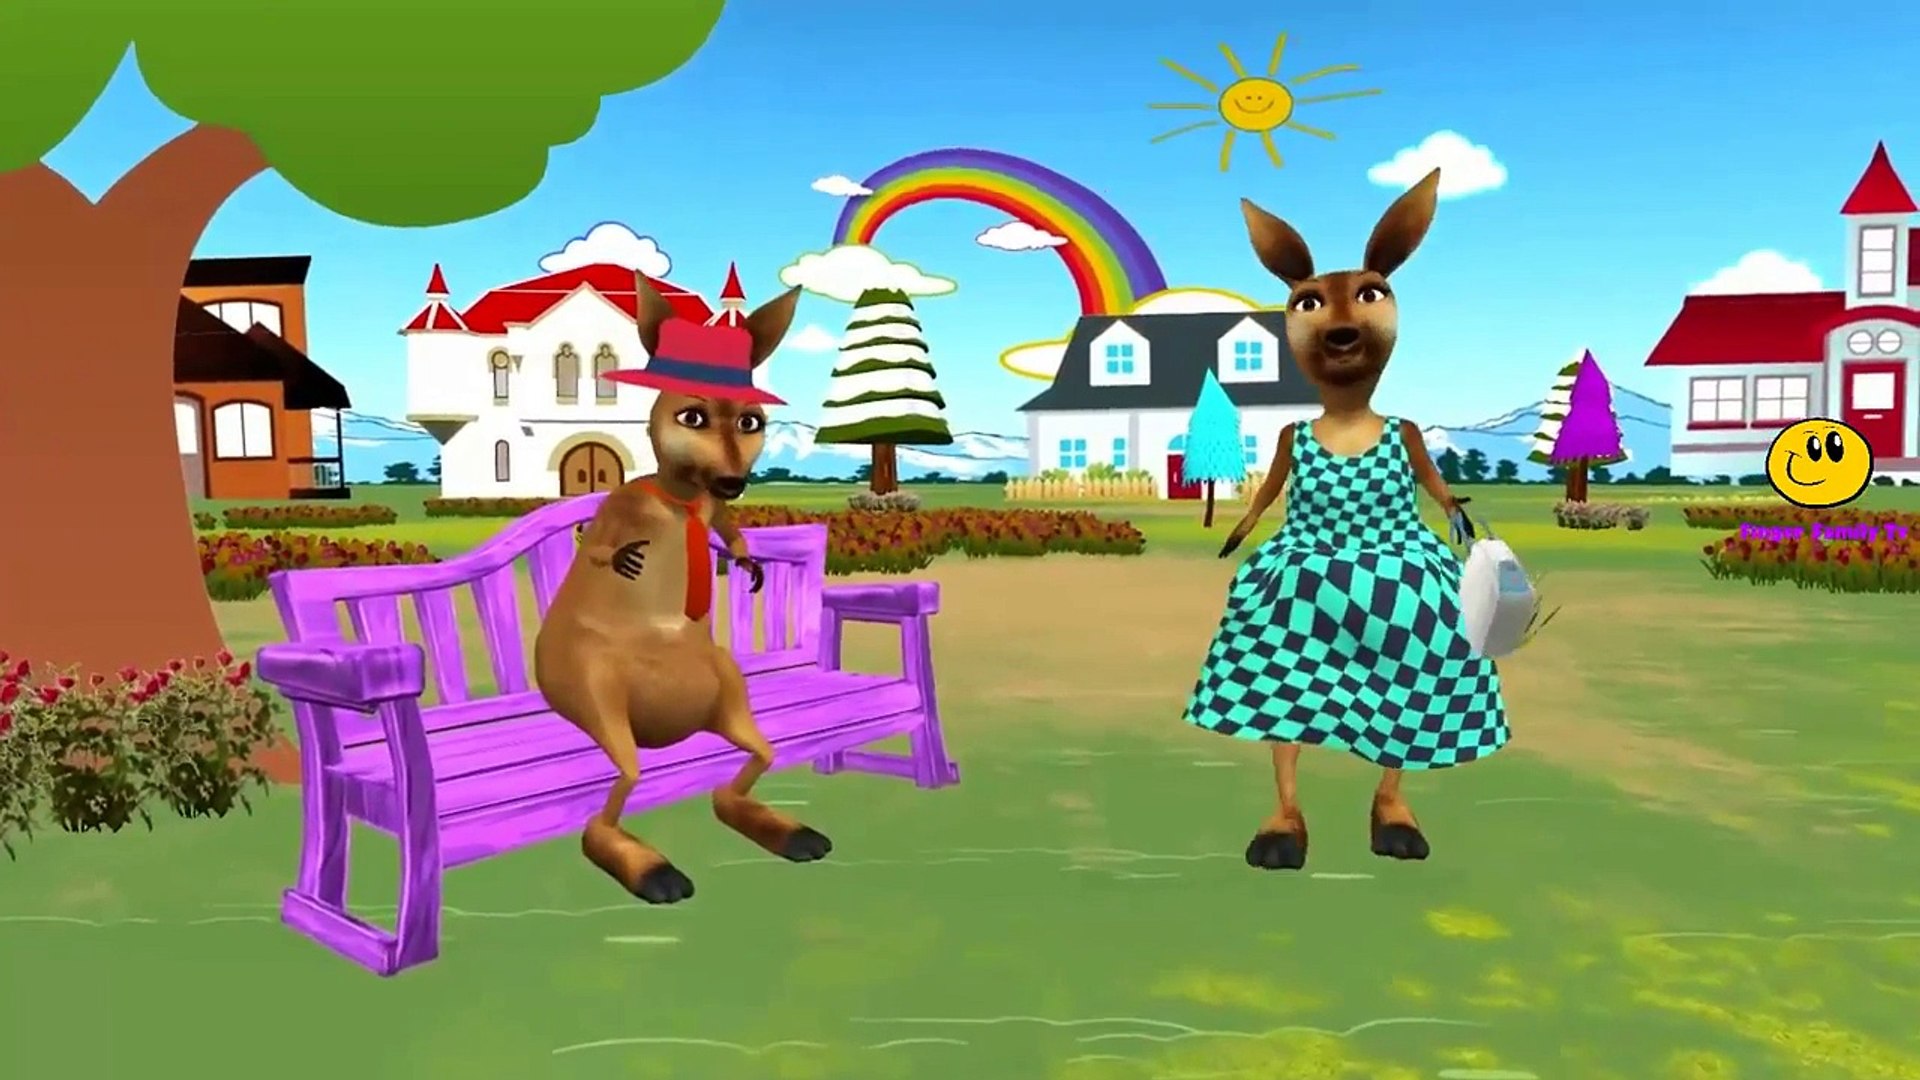 Kangaroo Cartoons for Kids Finger Family Children Nursery Rhymes | Kangaroo Finger Family Rhymes